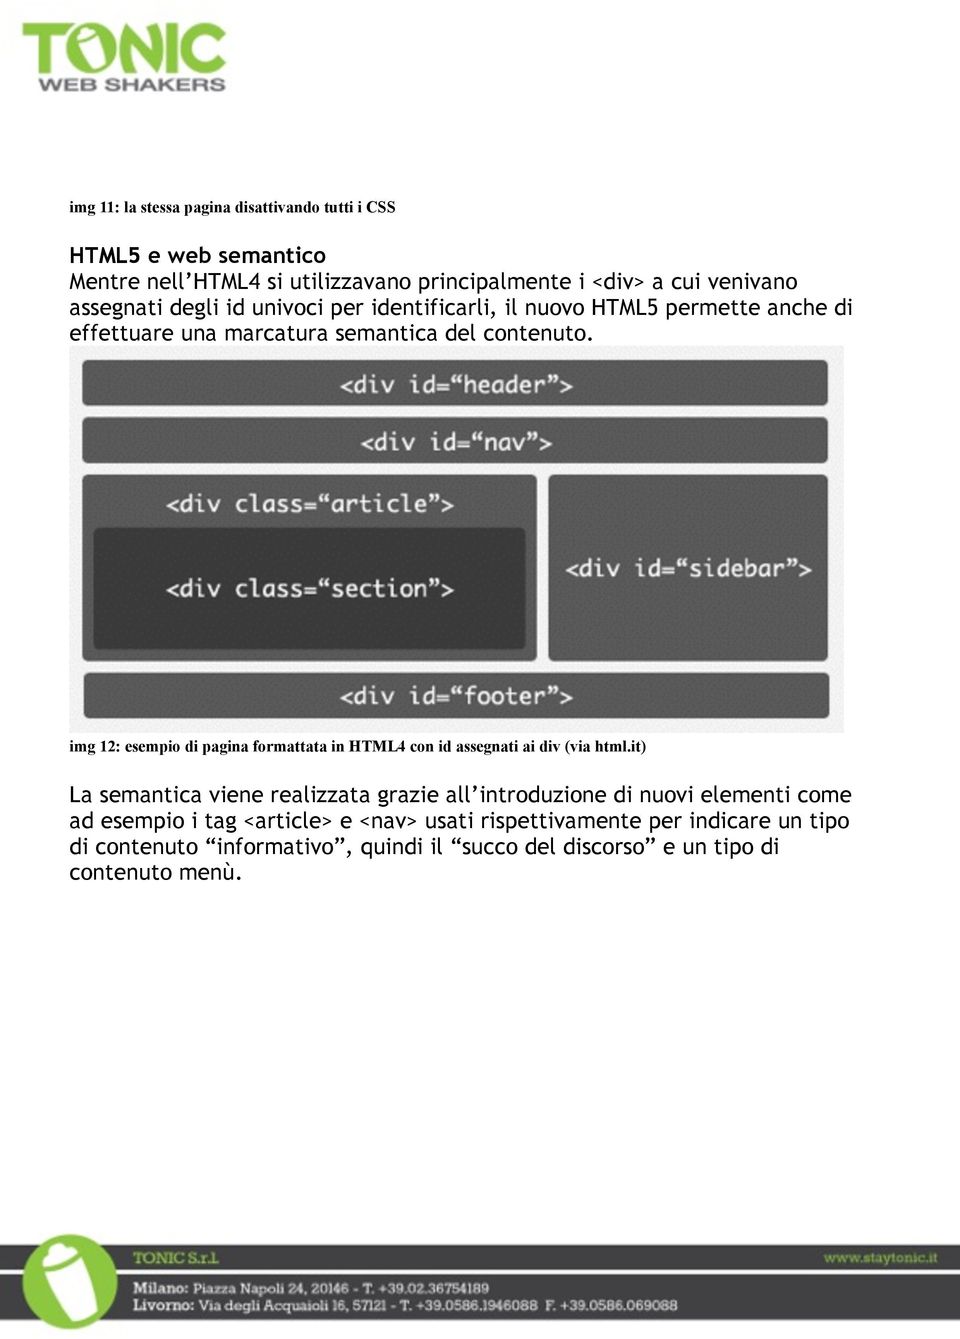 img 12: esempio di pagina formattata in HTML4 con id assegnati ai div (via html.